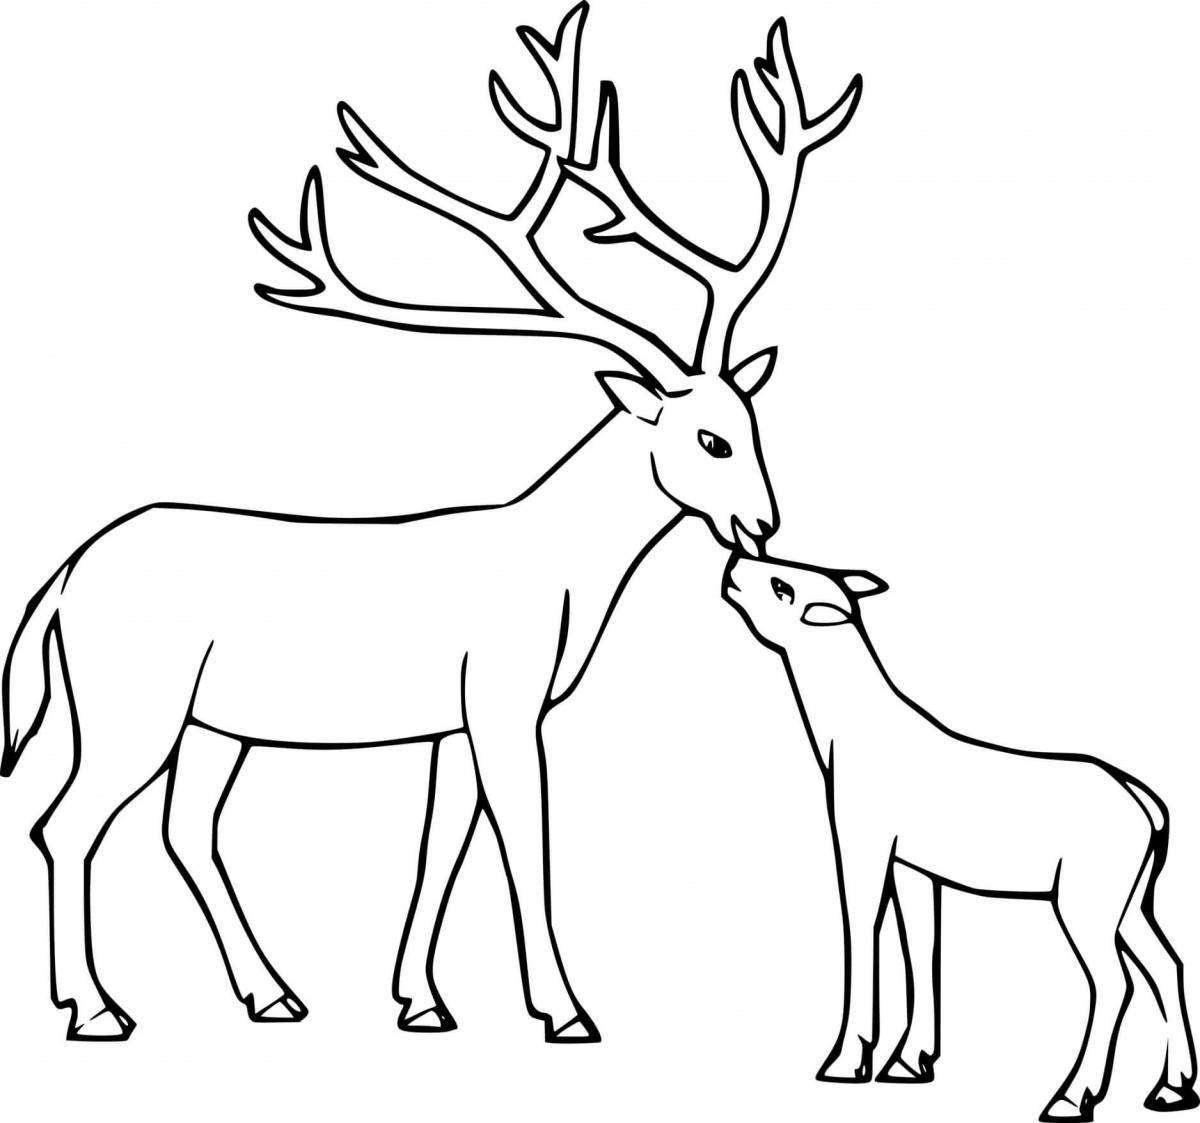 Outstanding deer coloring book for kids